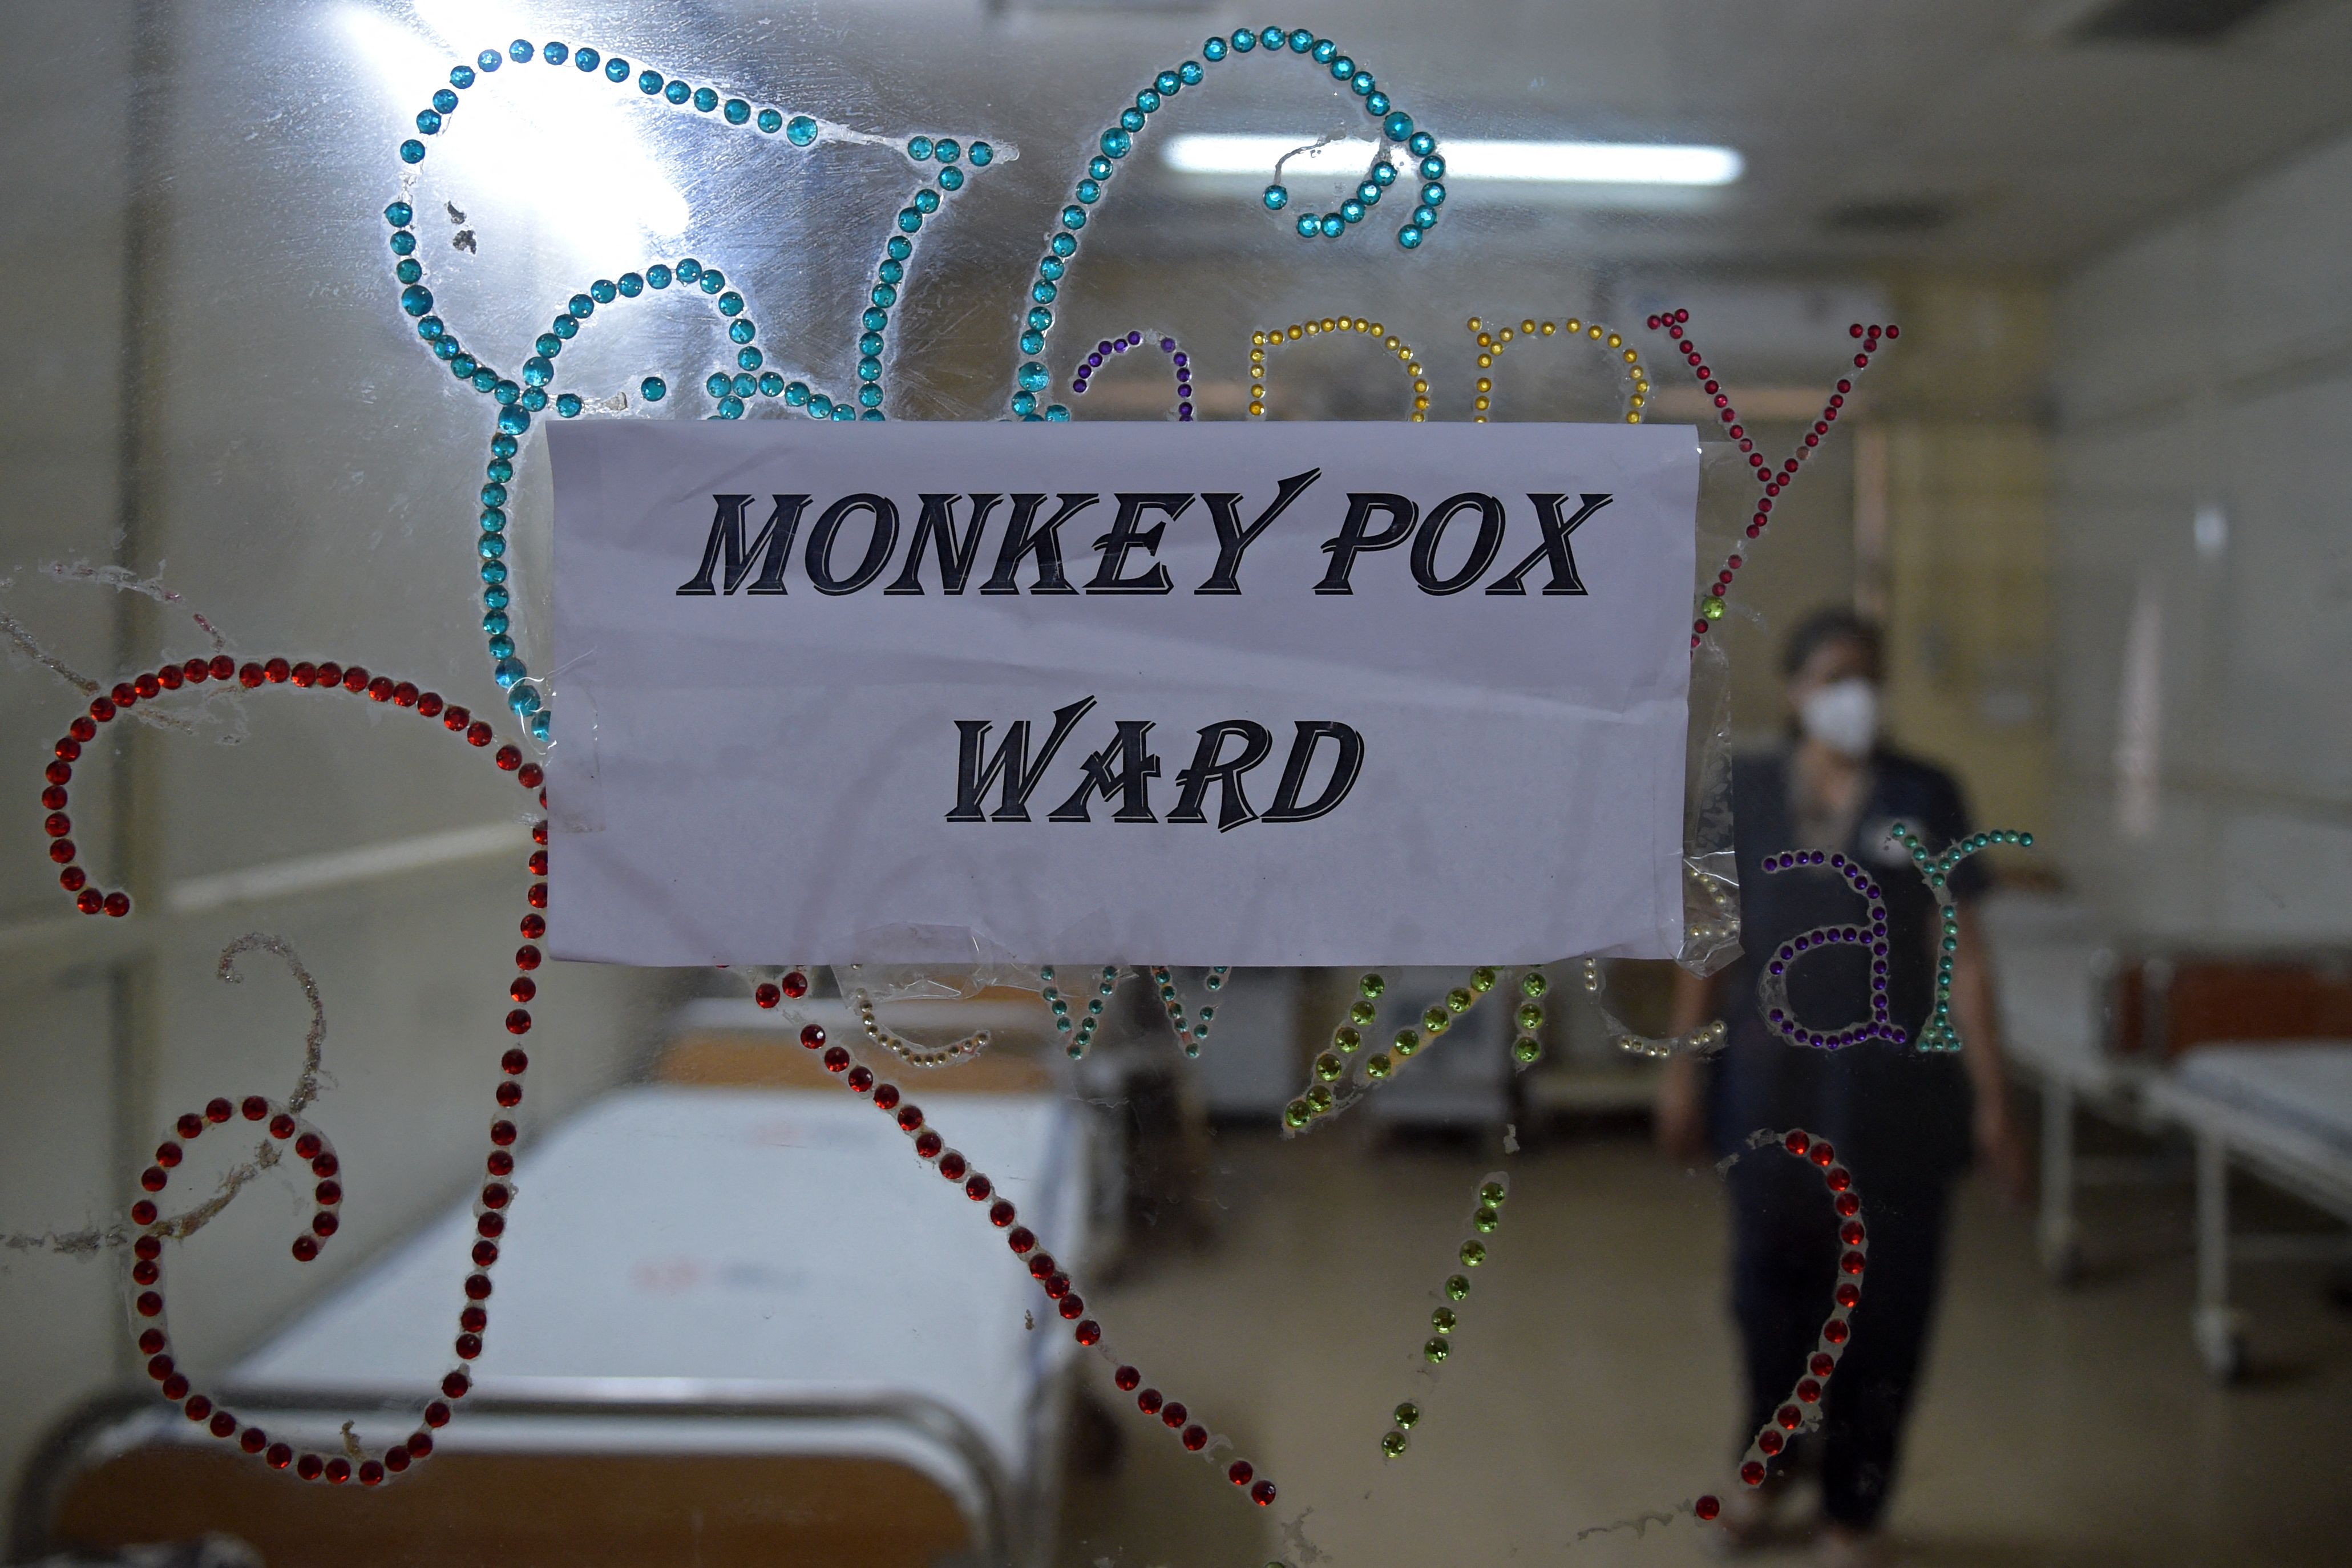 A monkeypox ward.